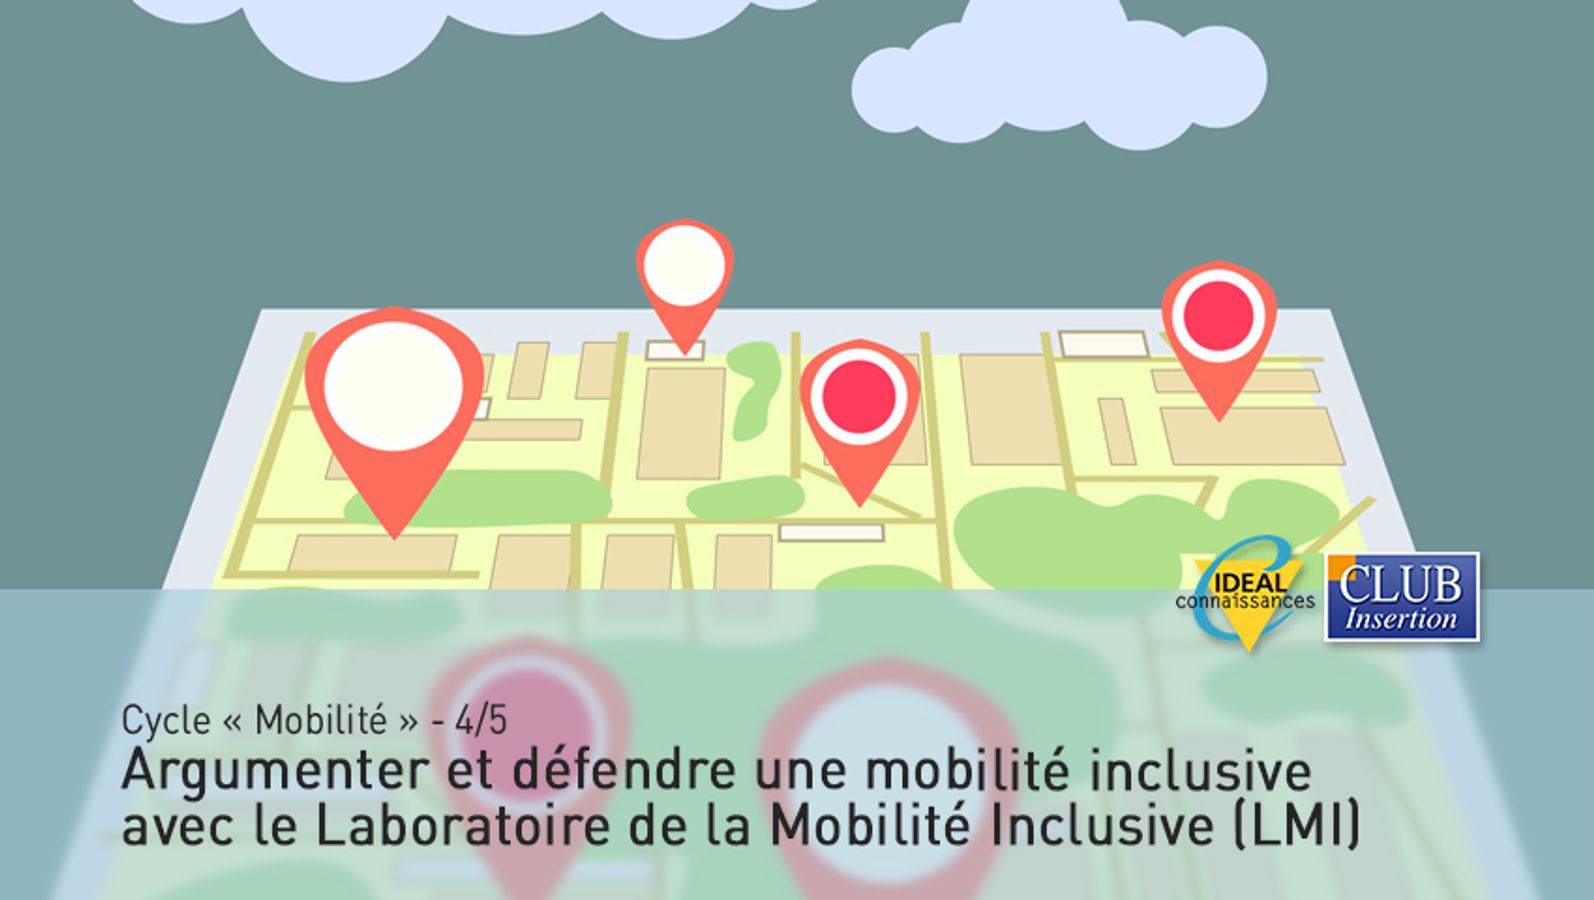 Cycle "Mobilité"- 4/5 - Argumenter et défendre une mobilité inclusive avec le Laboratoire de la Mobilité Inclusive (LMI)